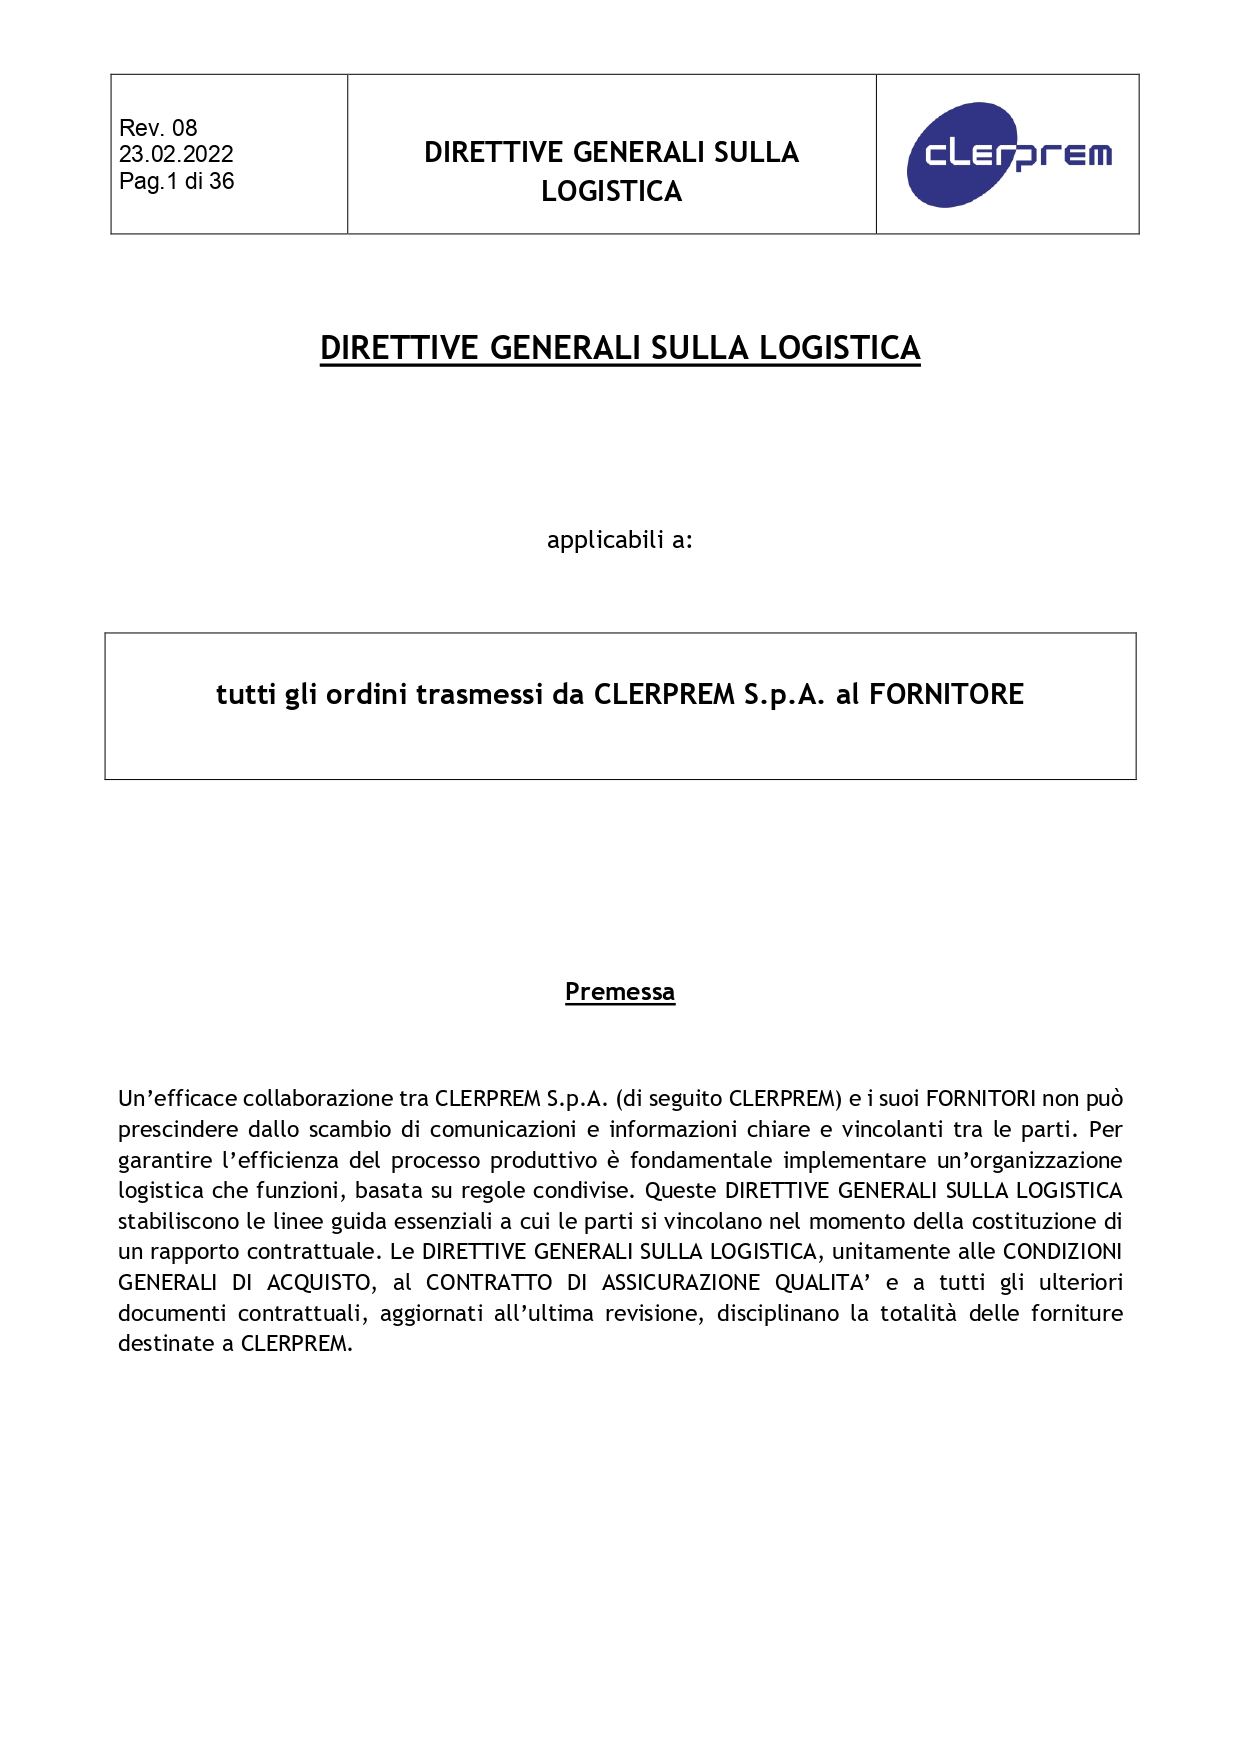 Direttive Generali sulla Logistica_page-0001